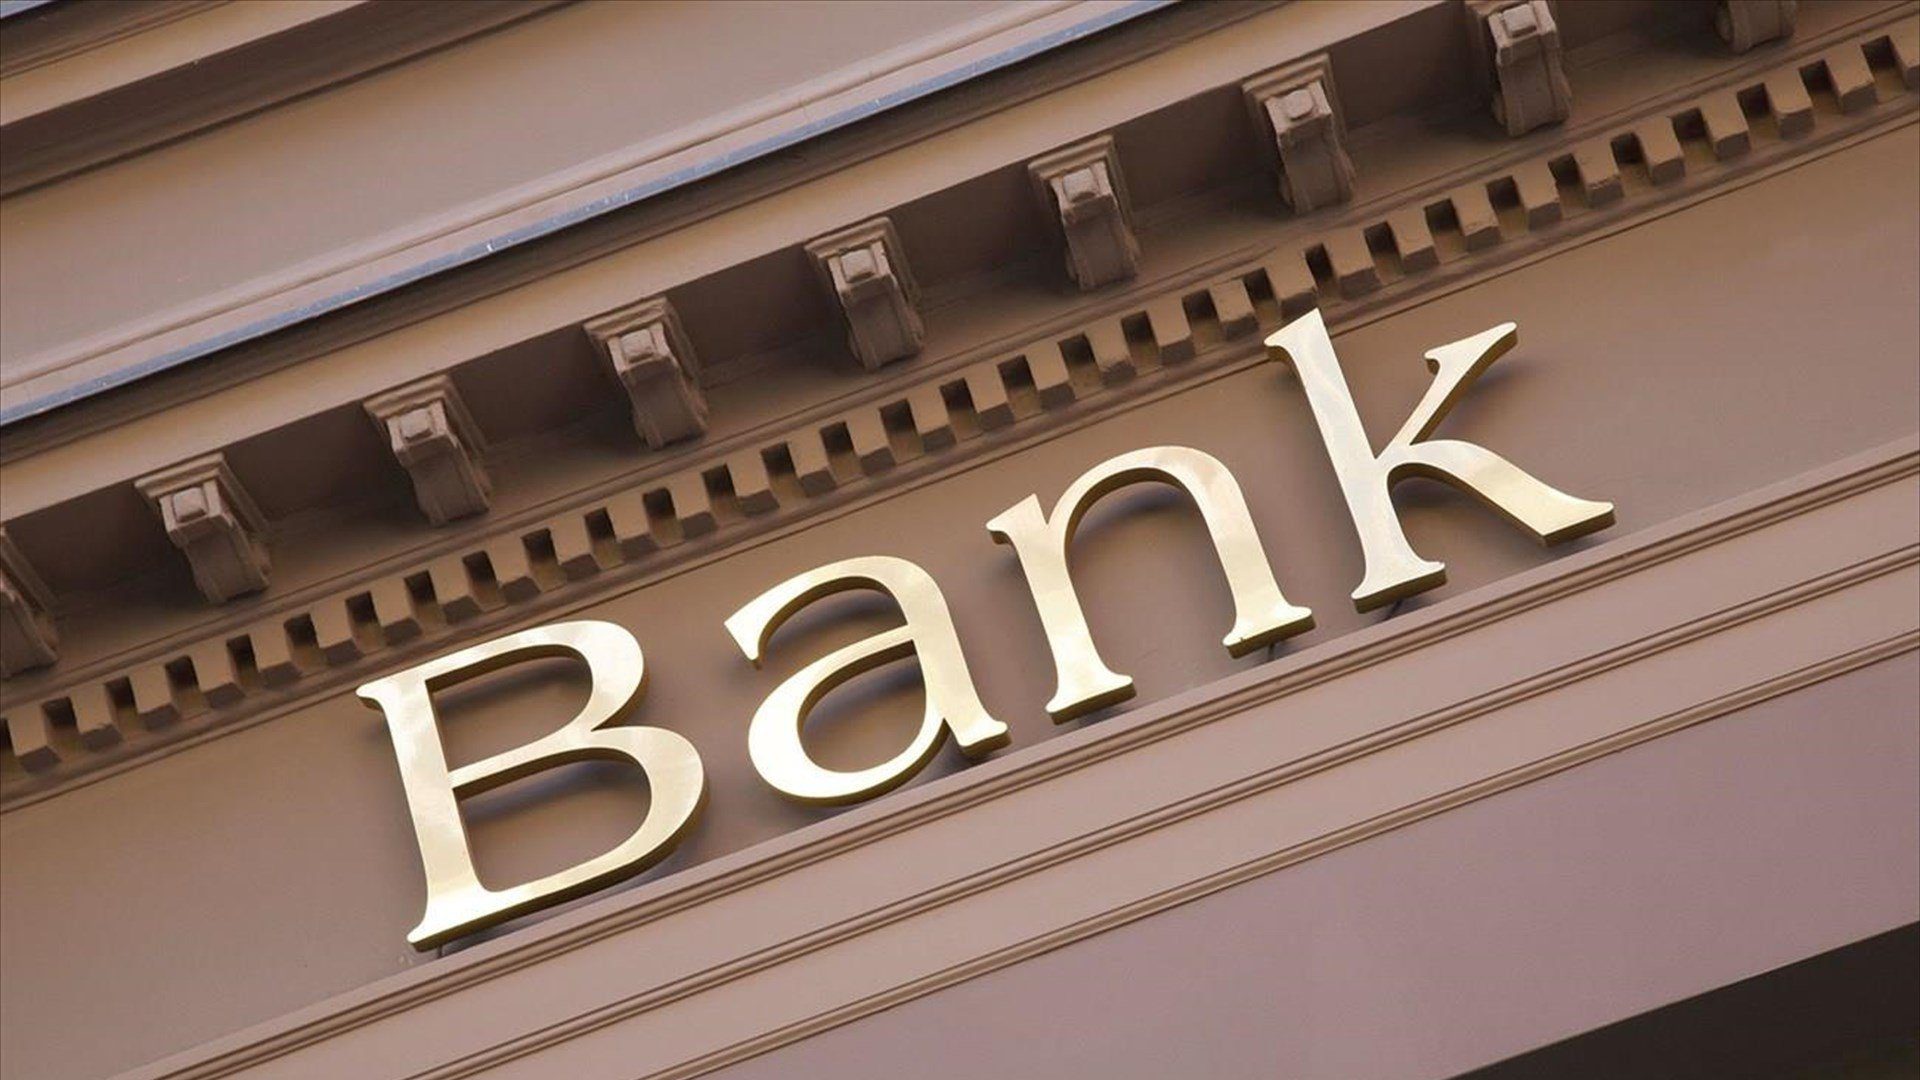 ΤΧΣ για τράπεζες: Ανοιχτός ο δρόμος για διανομή μερίσματος